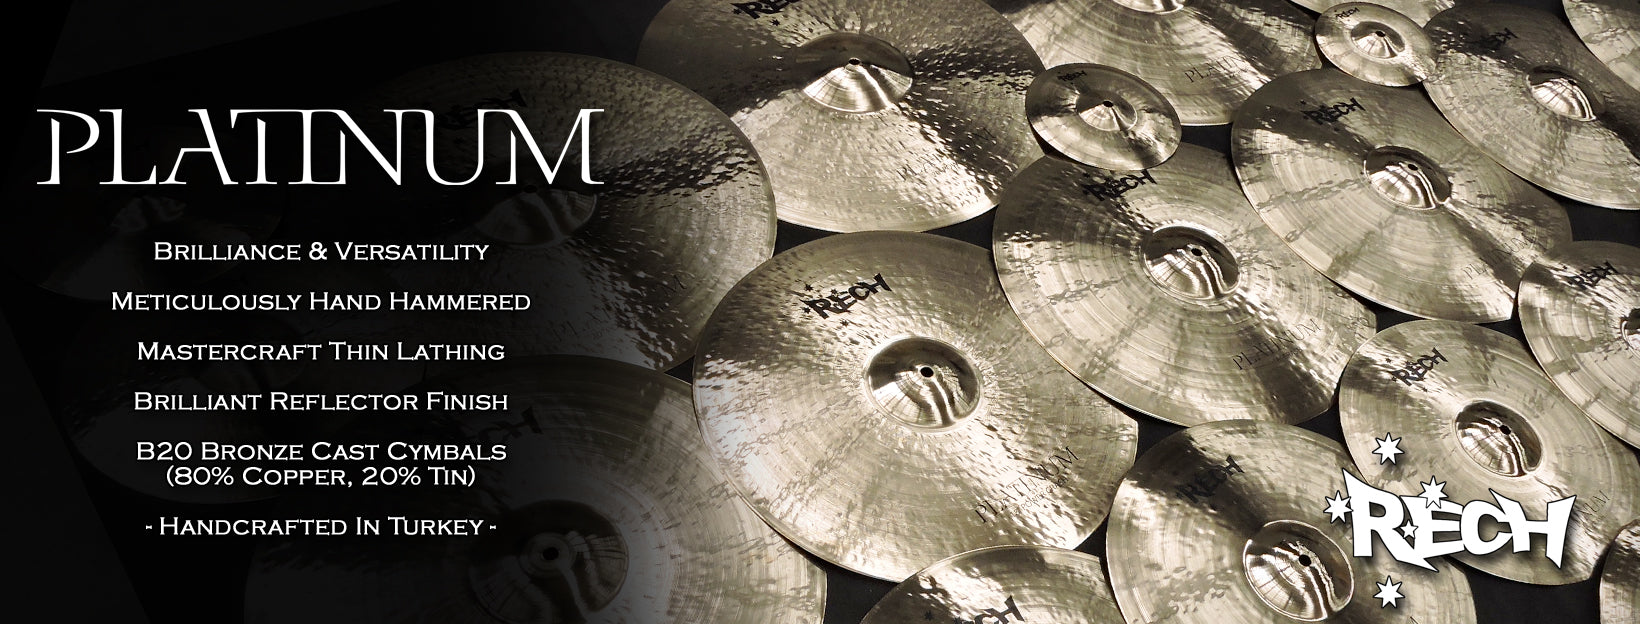 Rech Platinum Cymbals